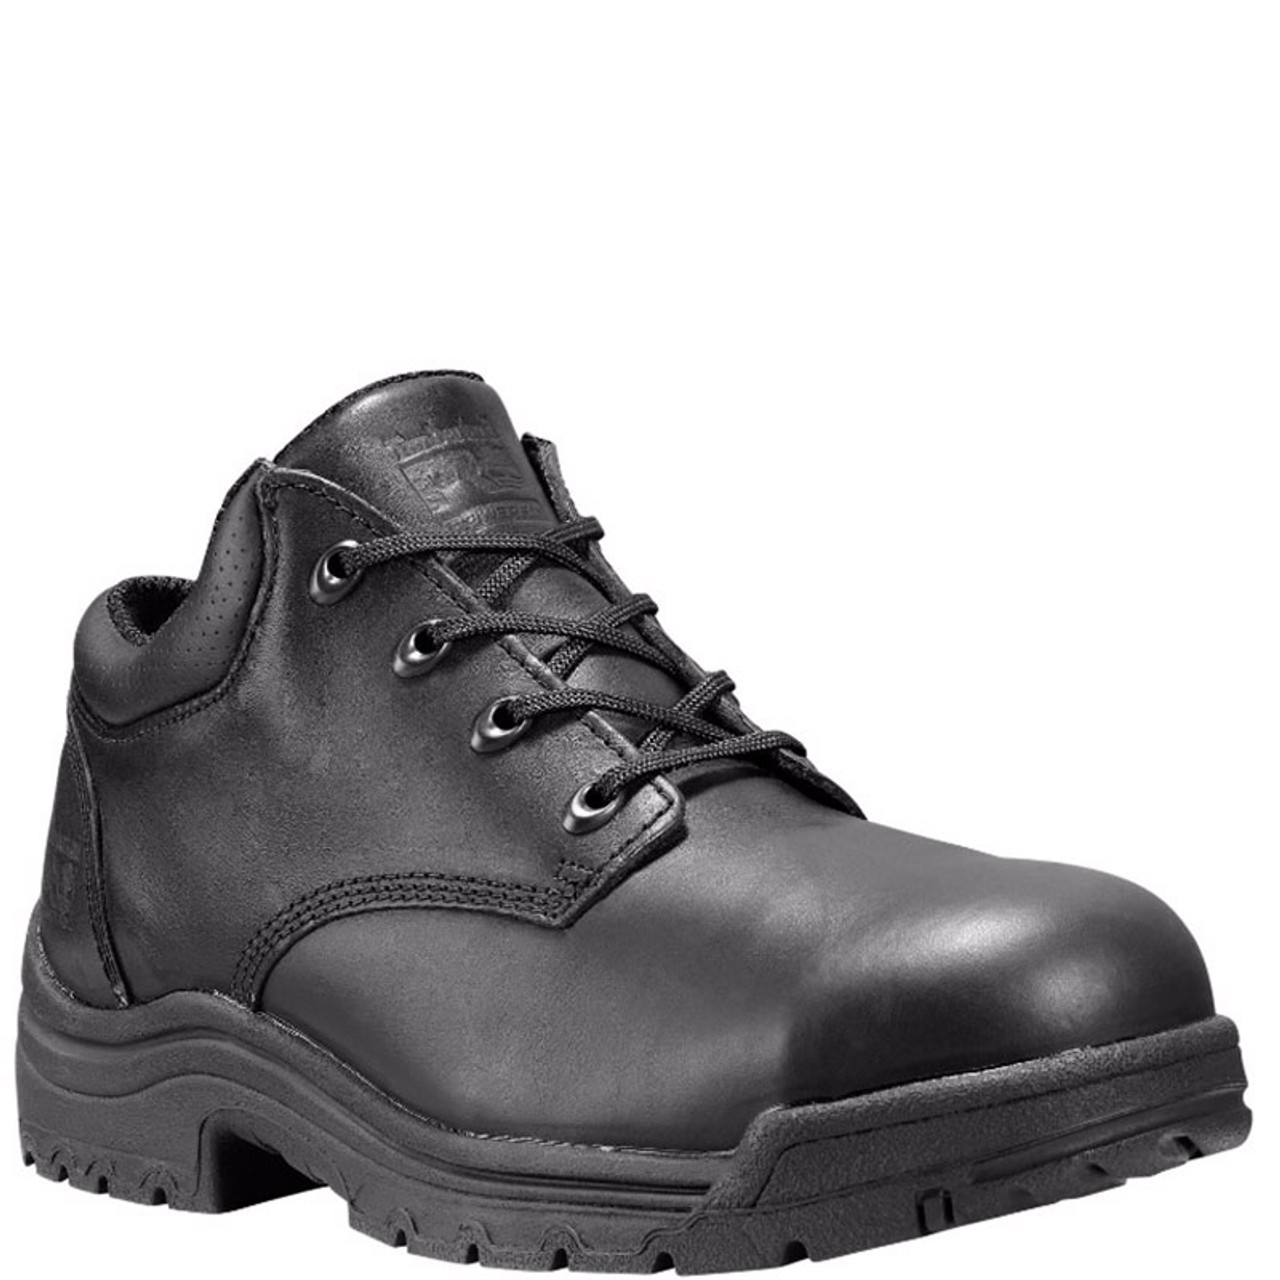 steel toe work boots sale